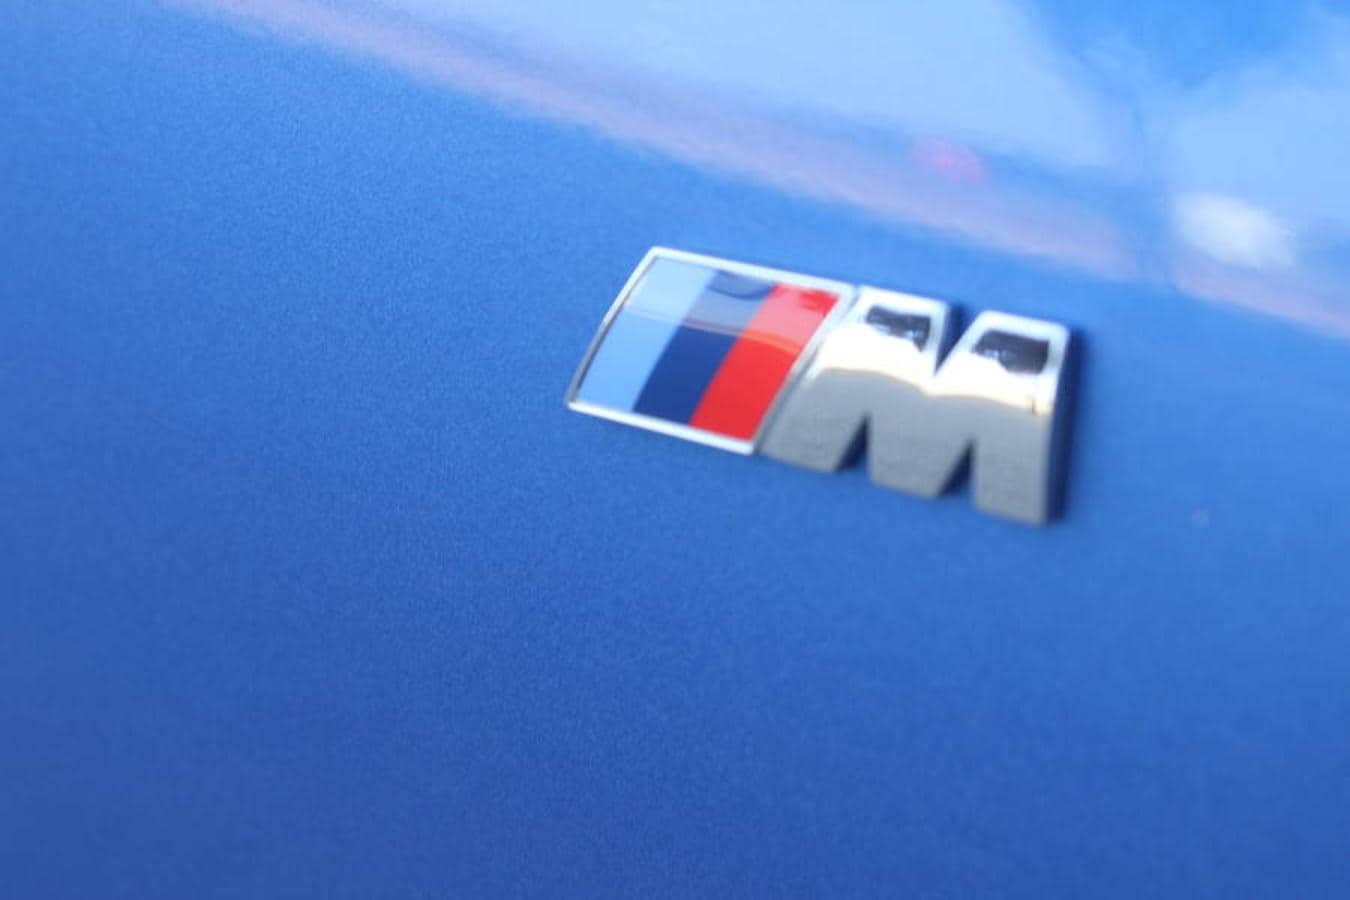 Probamos el Serie 3 familiar más potente, el 340i Touring, con 326 caballos, tracción total y el toque deportivo que otorga BMW a toda su gama.